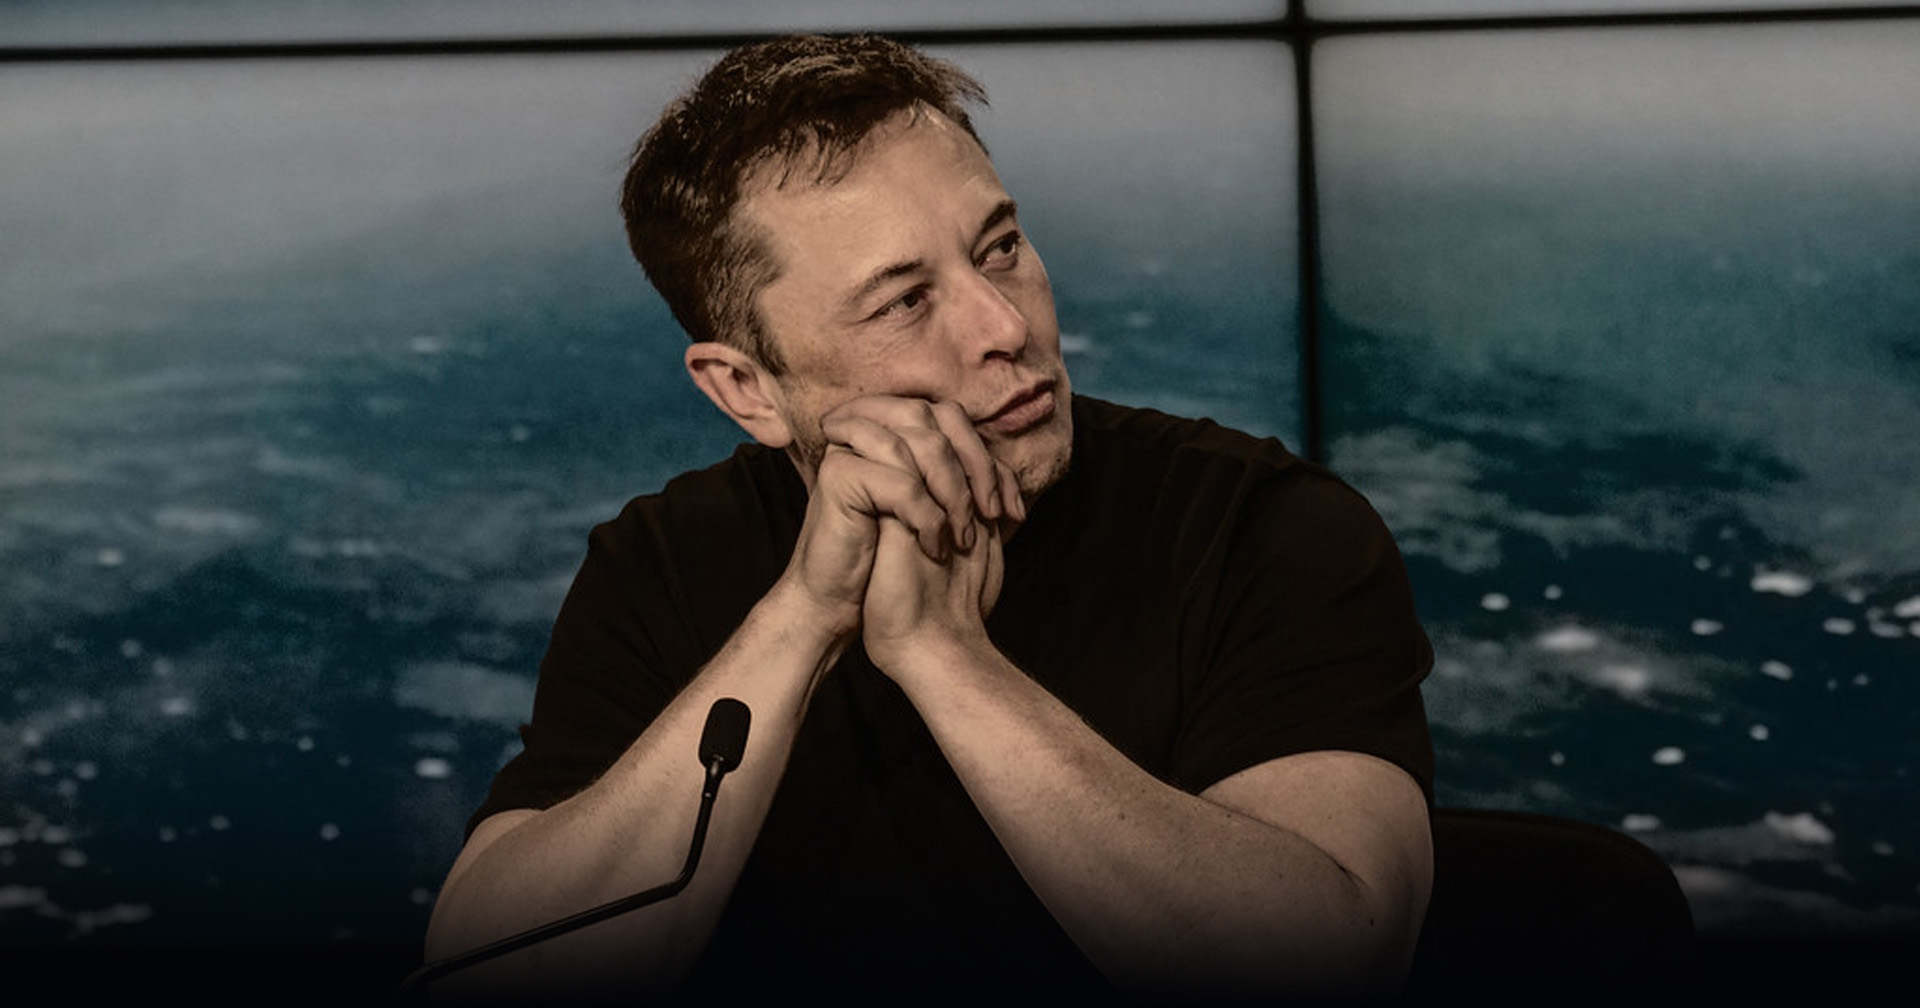 xAI ของ Elon Musk จะปล่อยโมเดล AI มาแข่งกับยักษ์ใหญ่วงการ AI ในวันเสาร์นี้